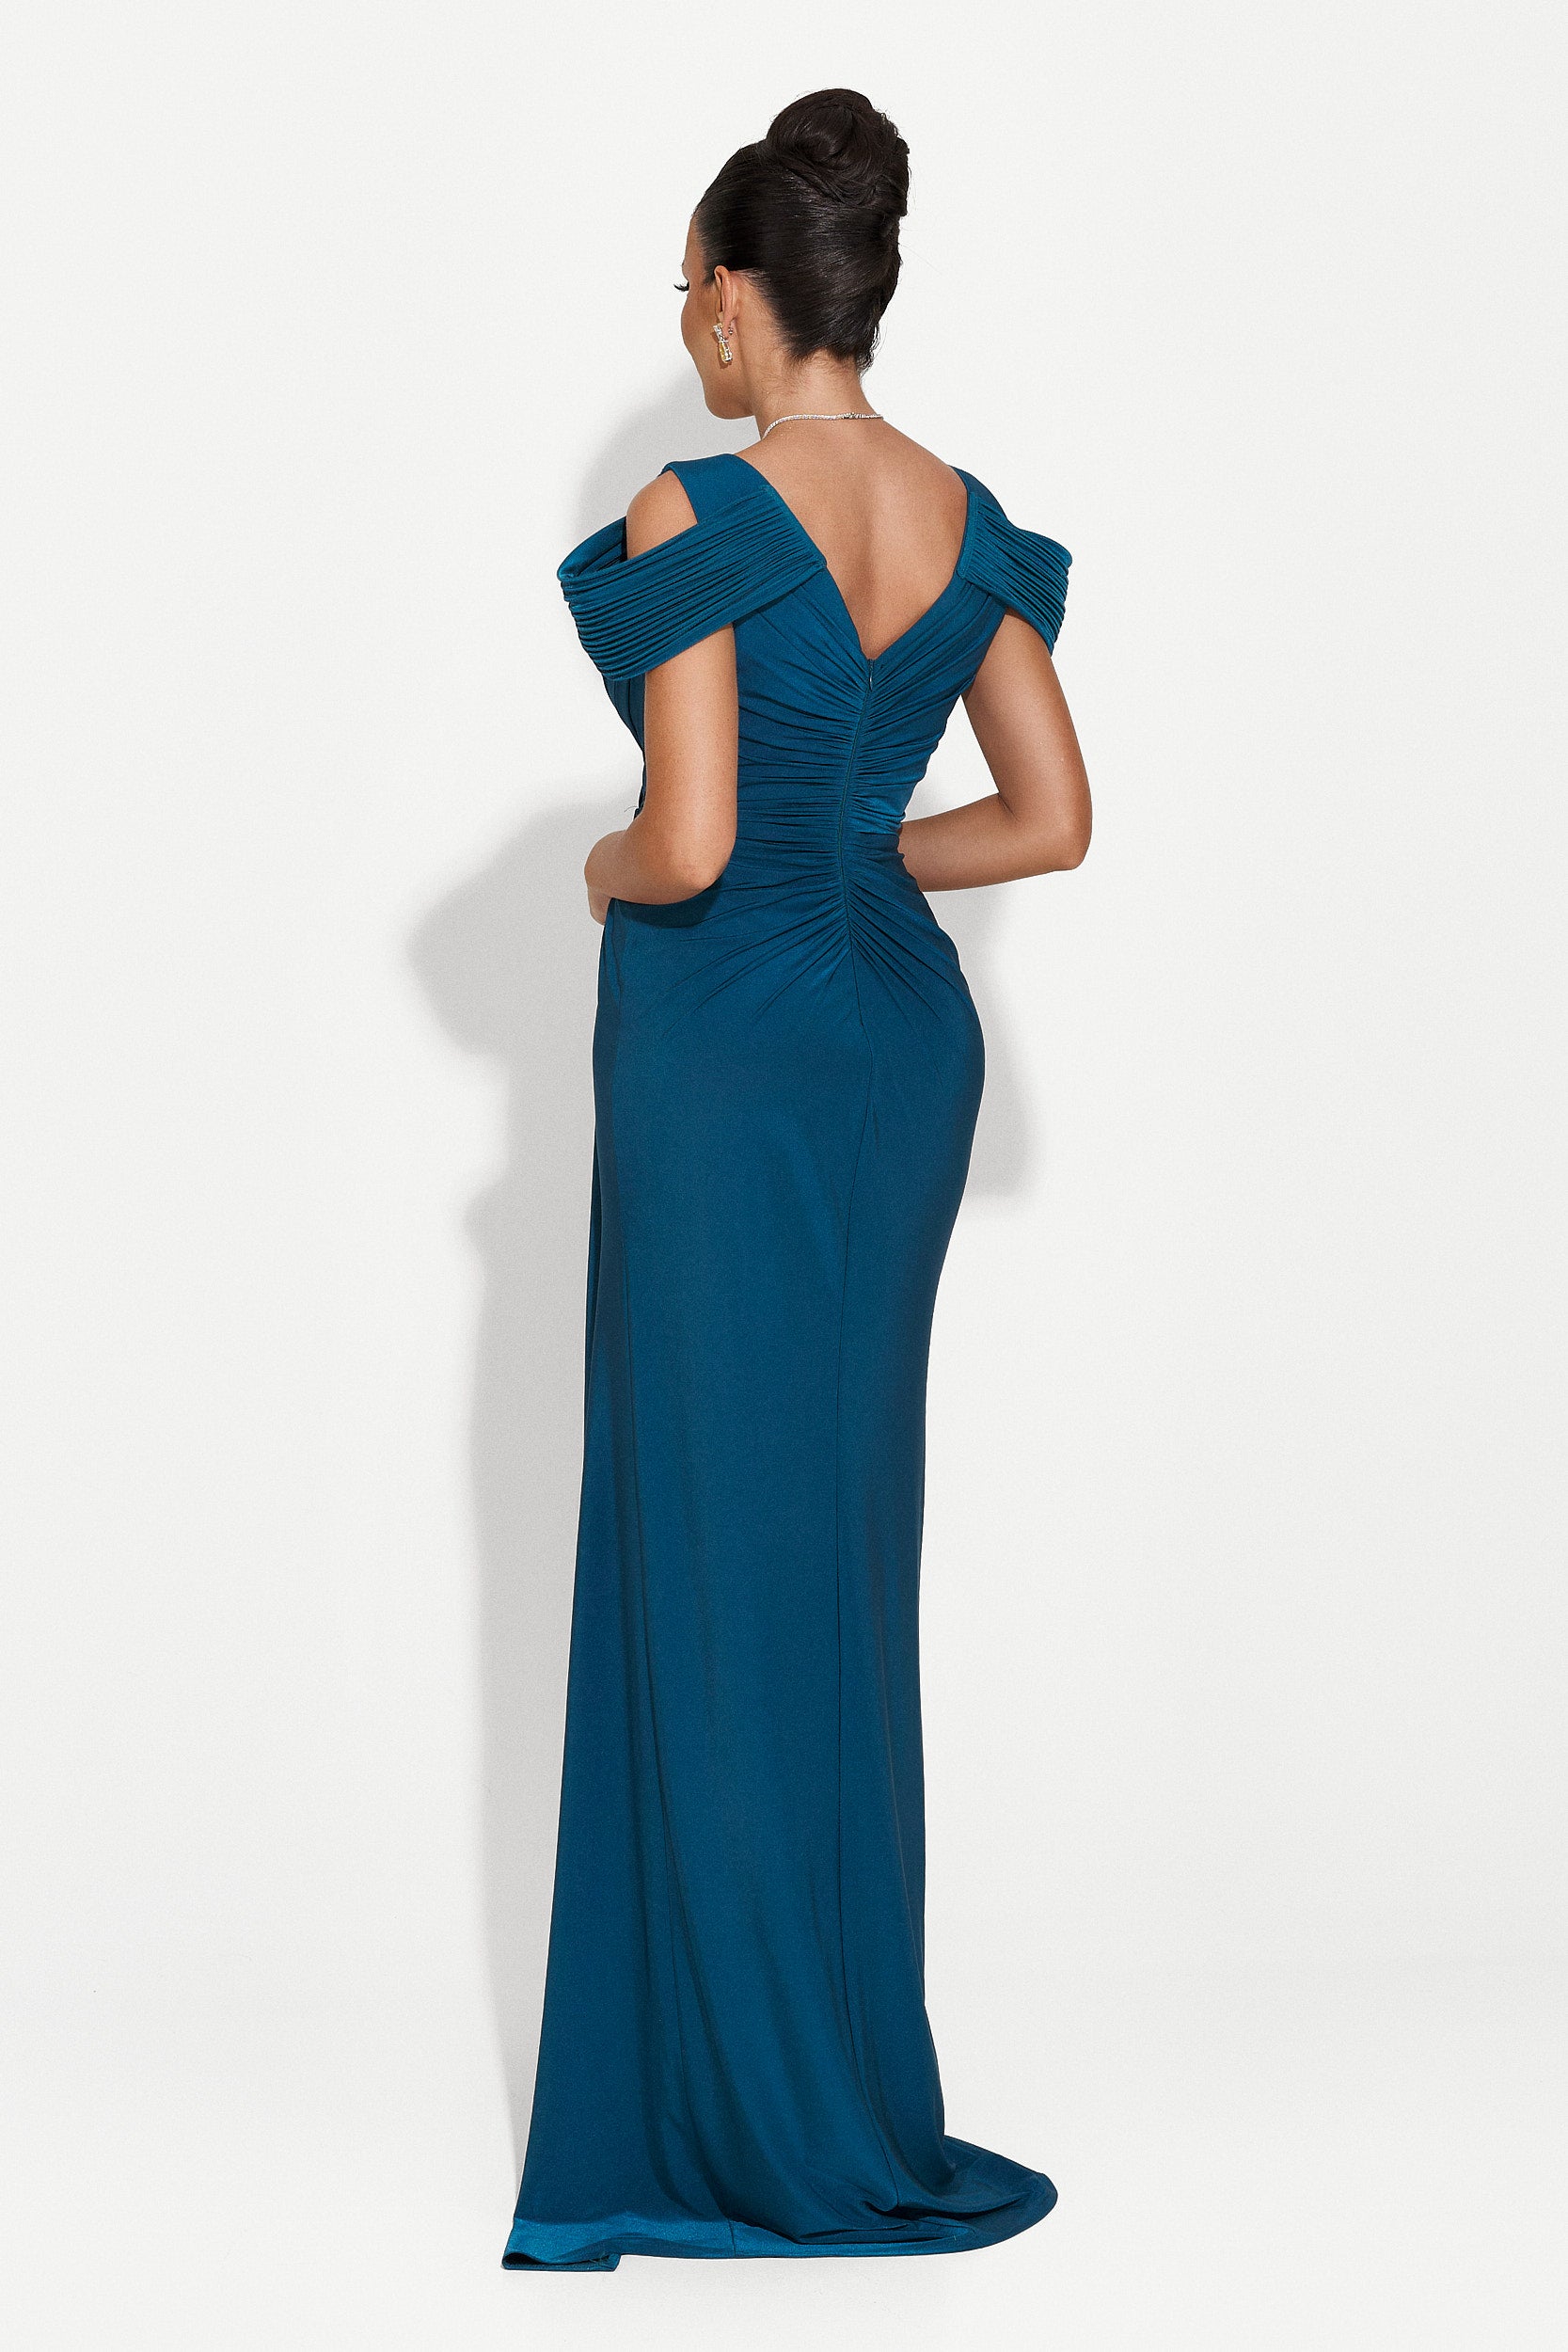 Soley Bogas hosszú kék női ruha